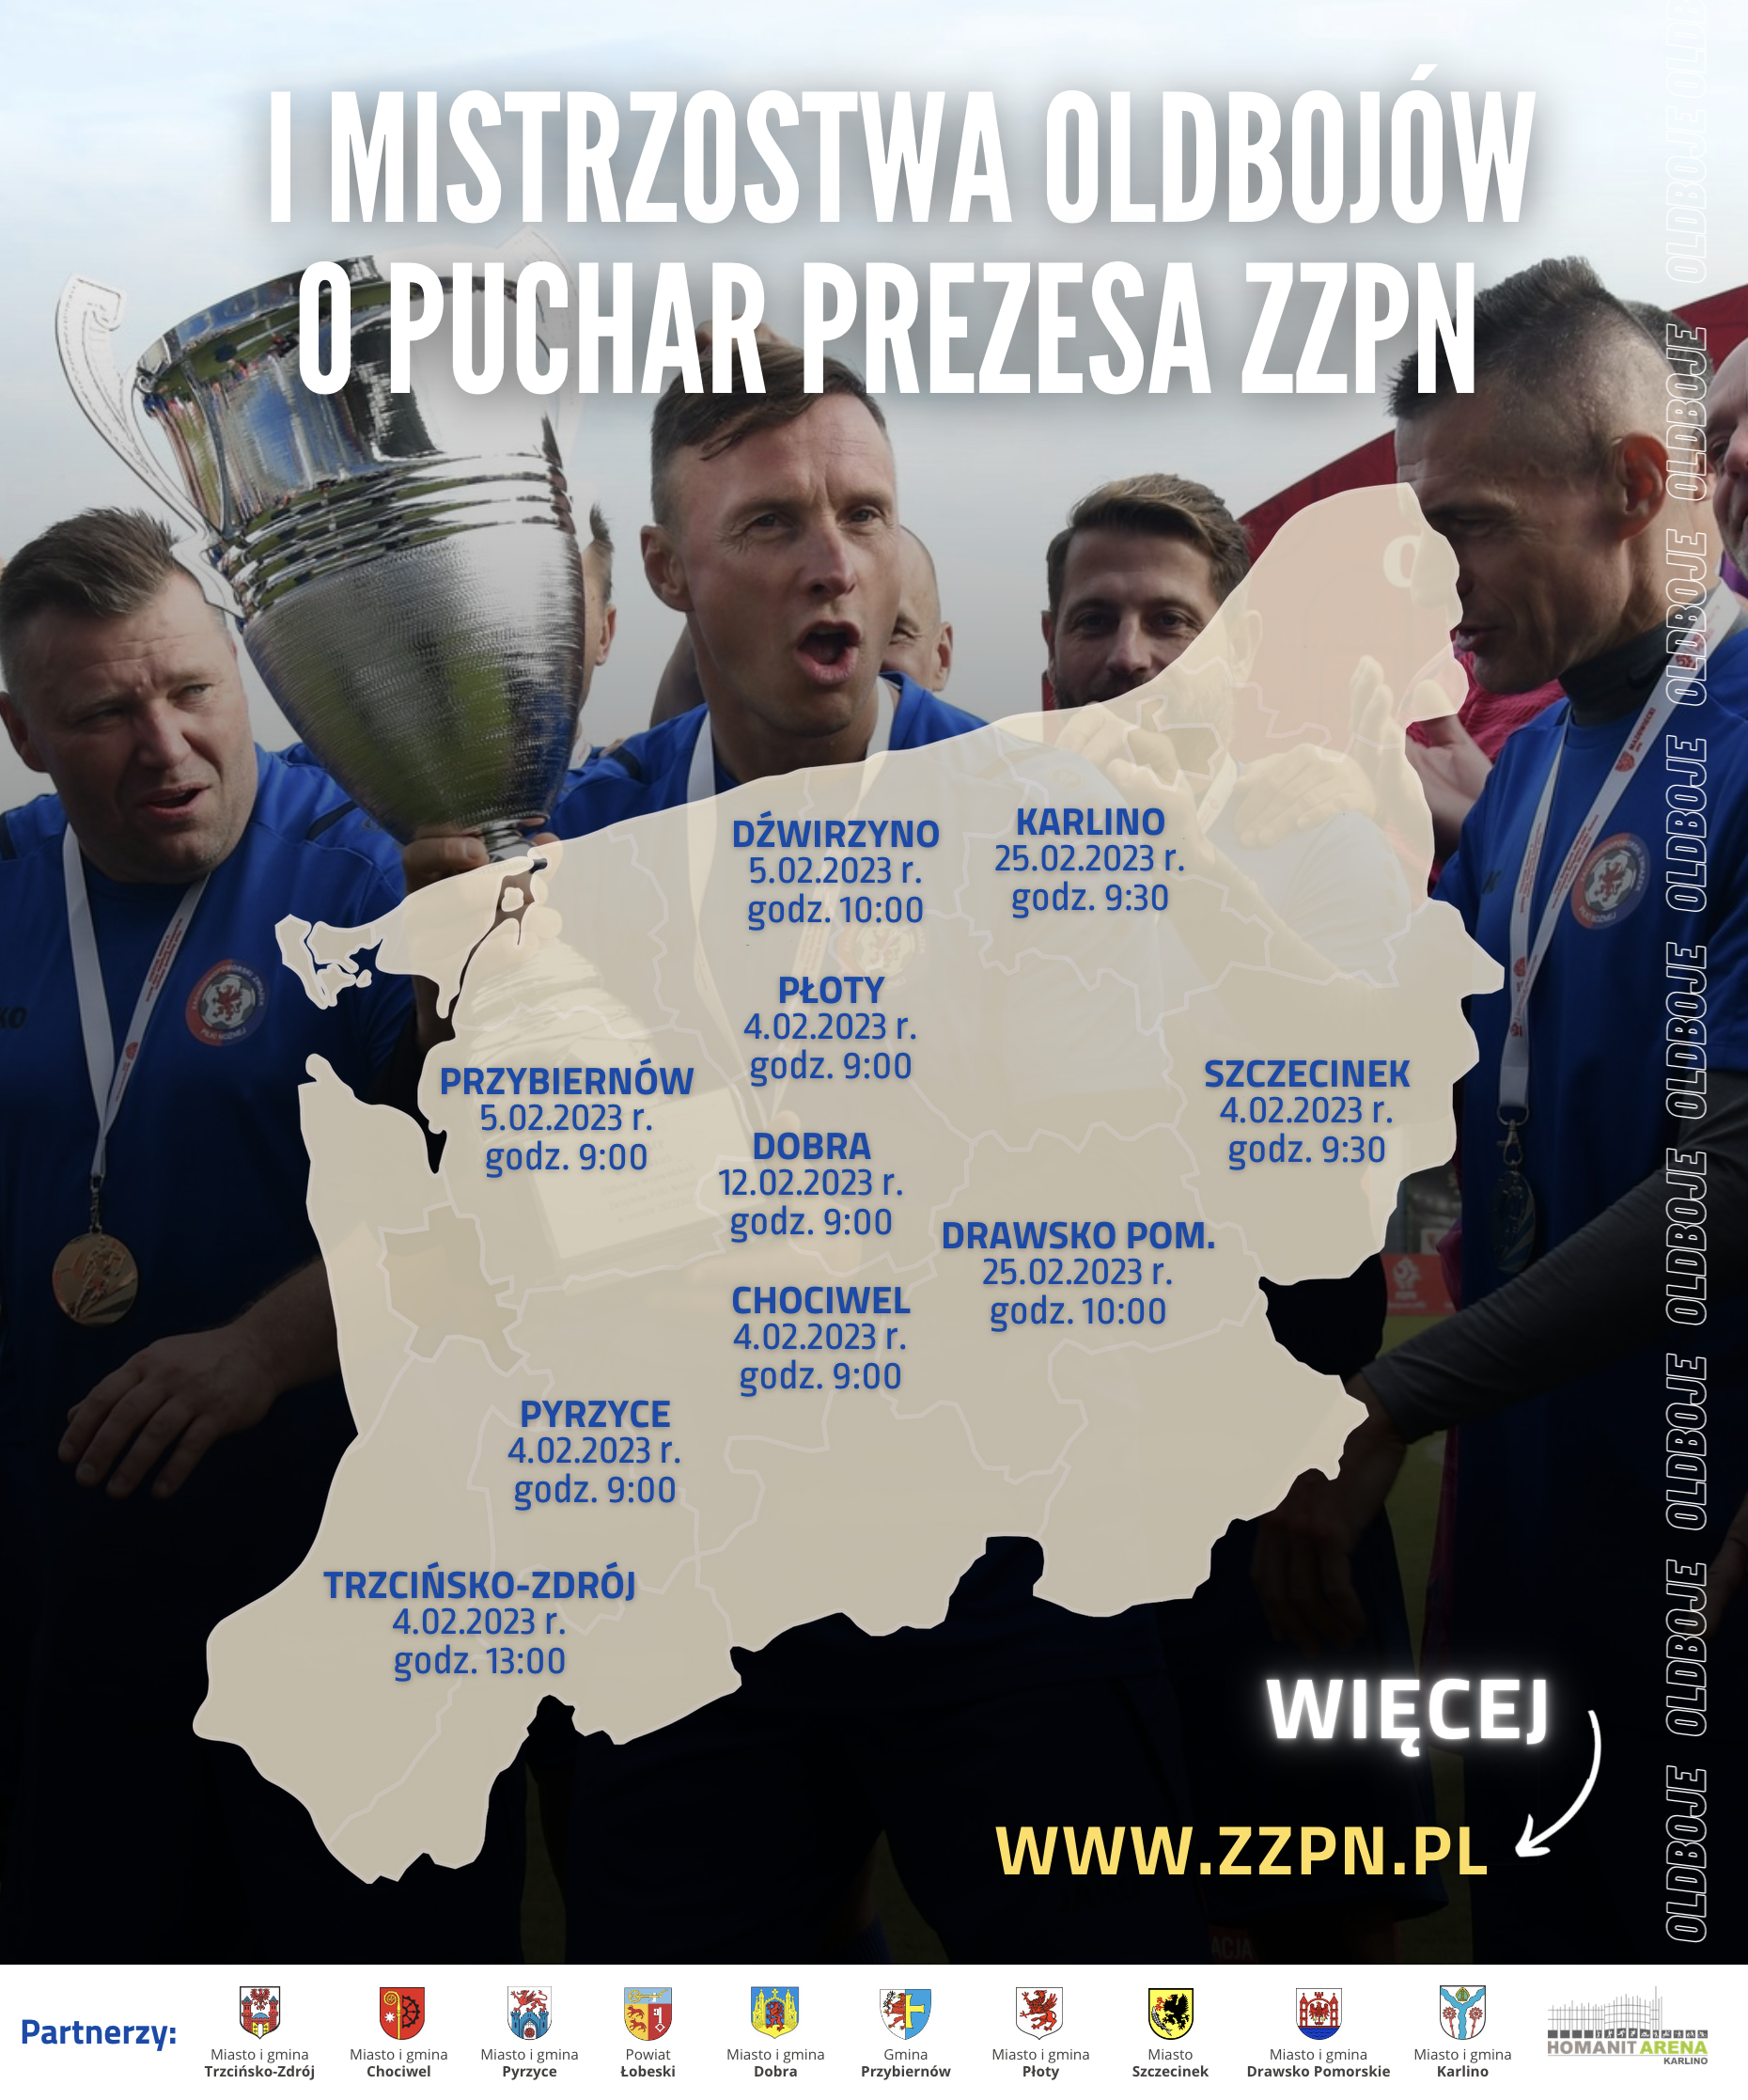 I edycja Mistrzostw Oldbojów o Puchar Prezesa ZZPN